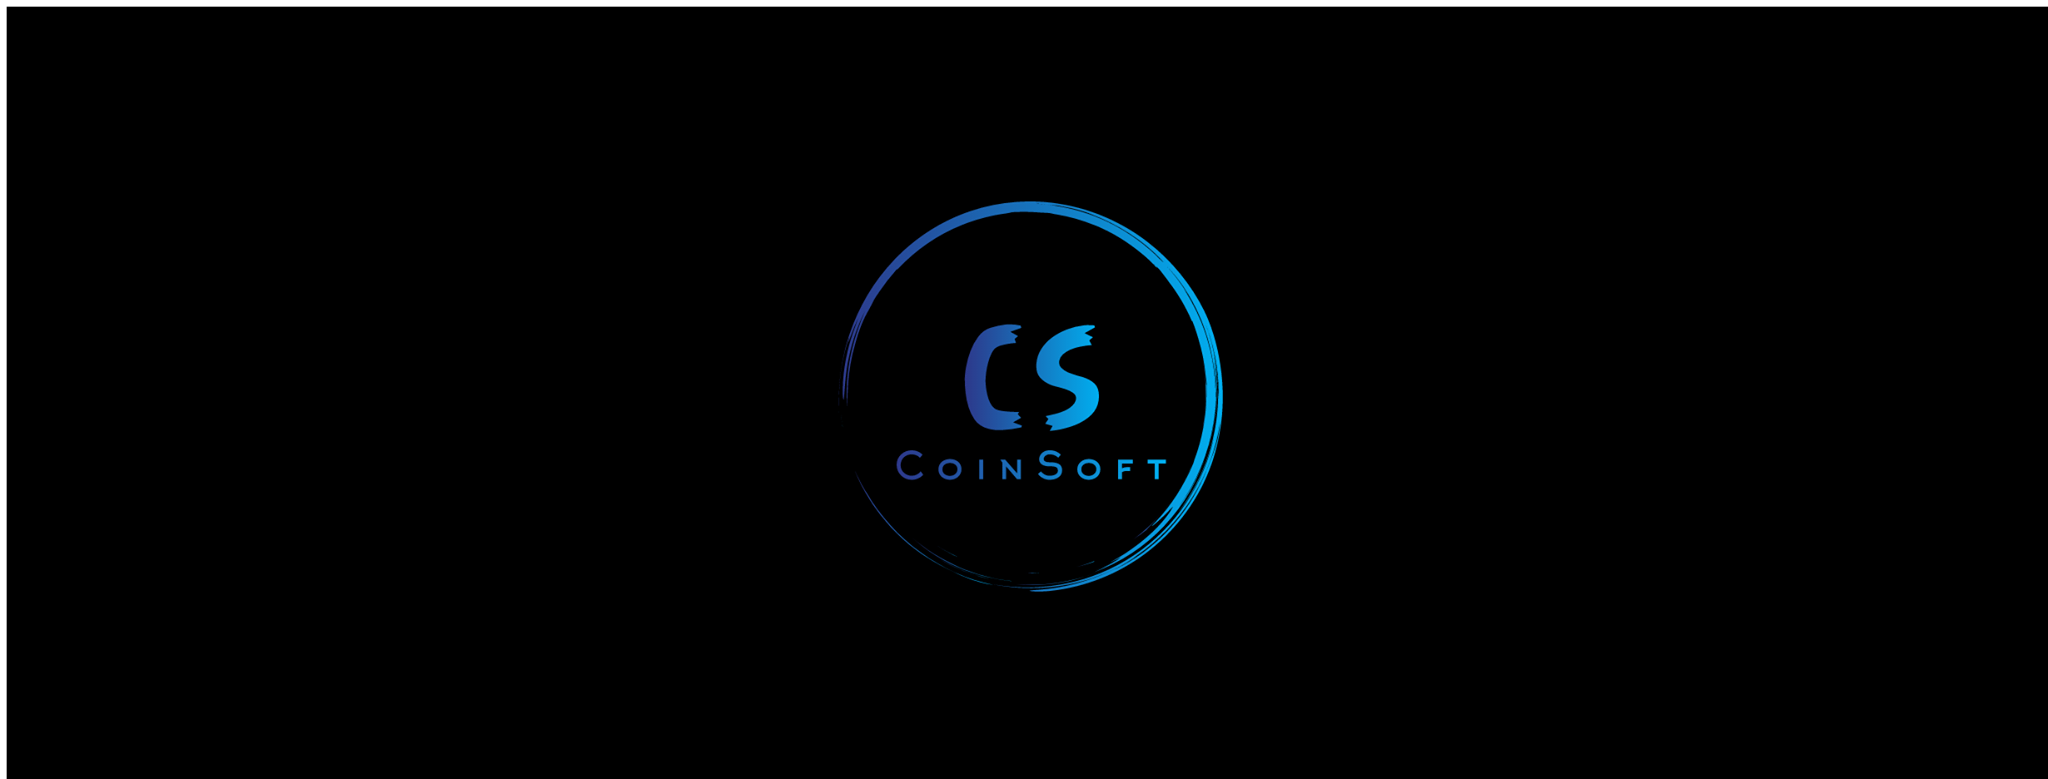 CoinSoft Mobile App Development Armenia